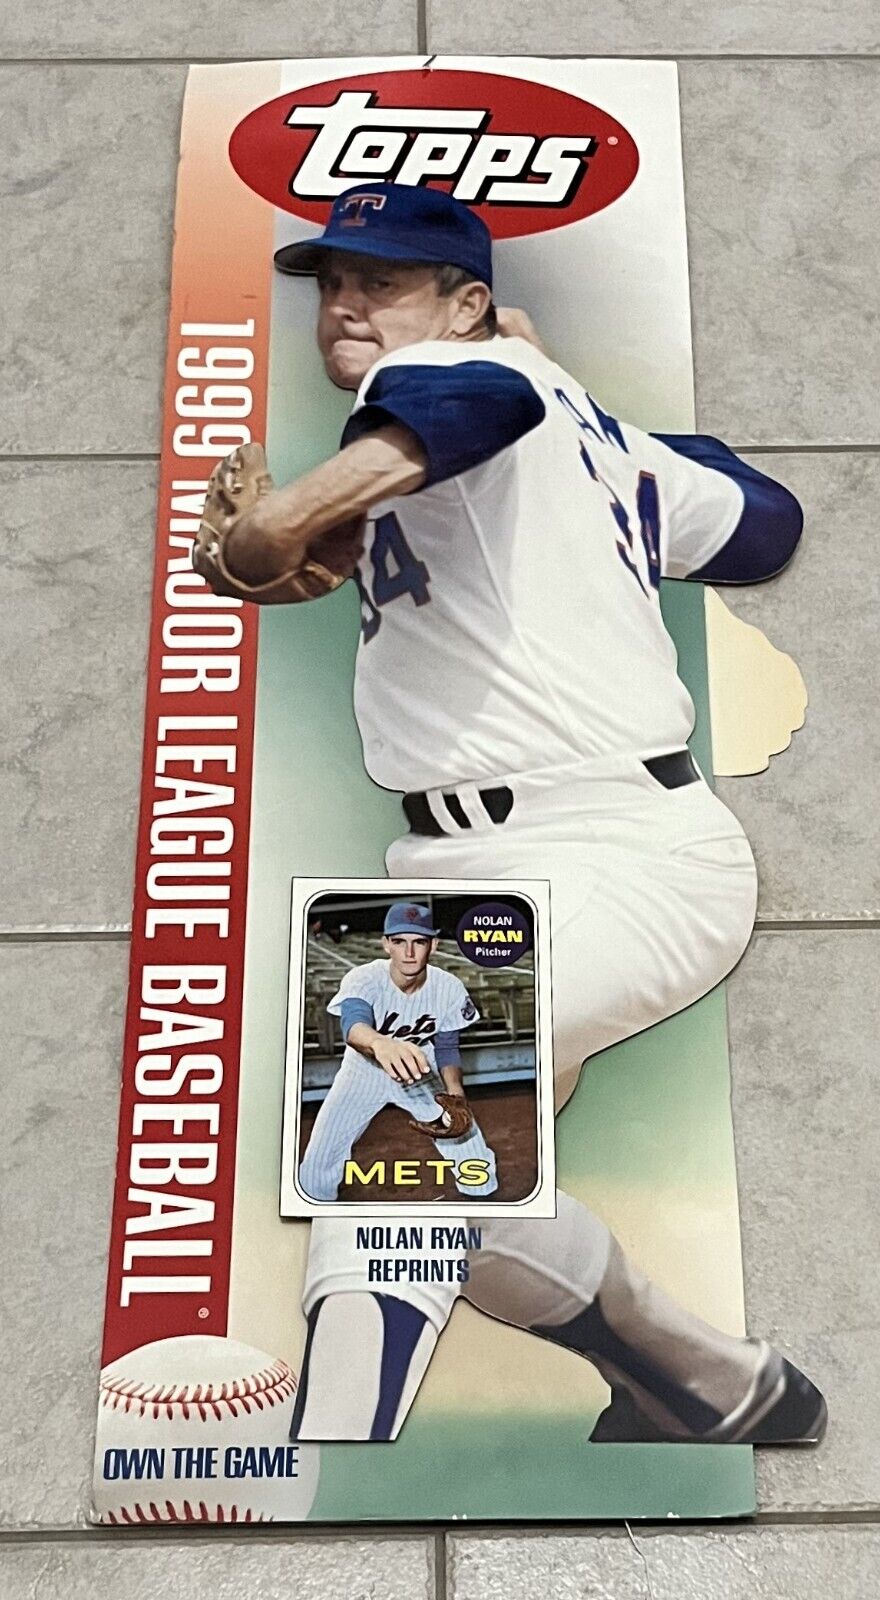 NOLAN RYAN ROGER CLEMENS 1999 Topps Baseball Cards Die Cut Hanging Promo Display